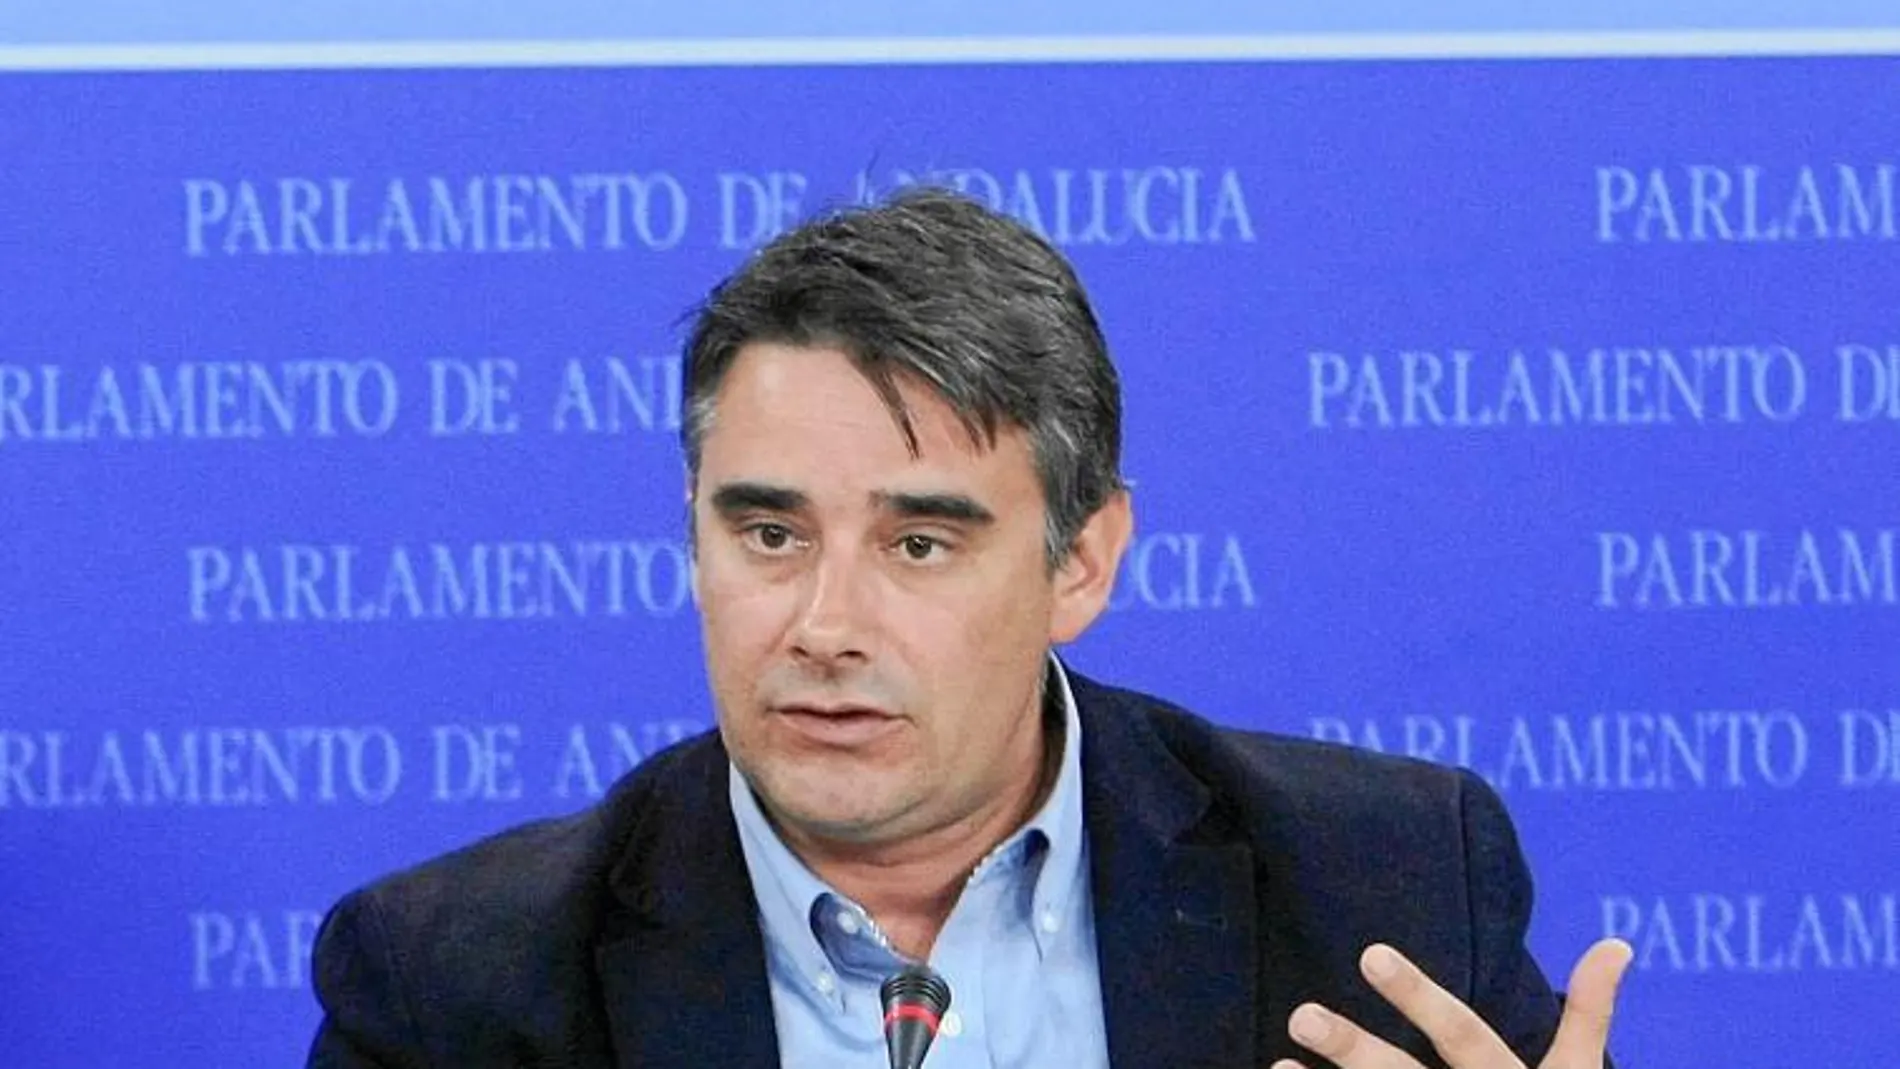 El diputado andaluz de Podemos Juan Ignacio Moreno Yagüe